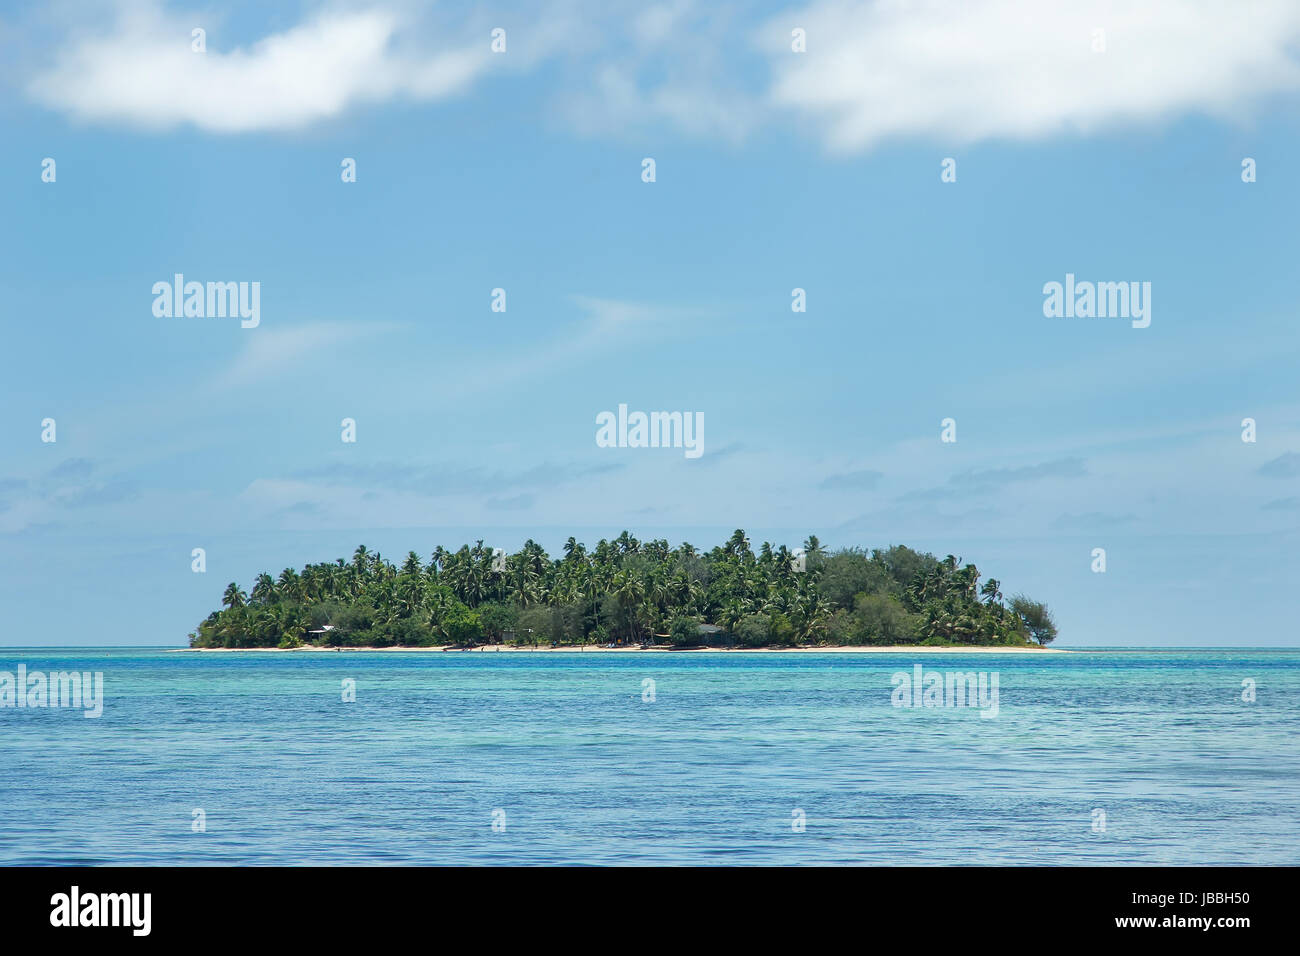 Kleine Insel vor der Küste von Tongatapu Insel in Tonga. Königreich Tonga  ist ein Archipel, bestehend aus 169 Inseln Stockfotografie - Alamy